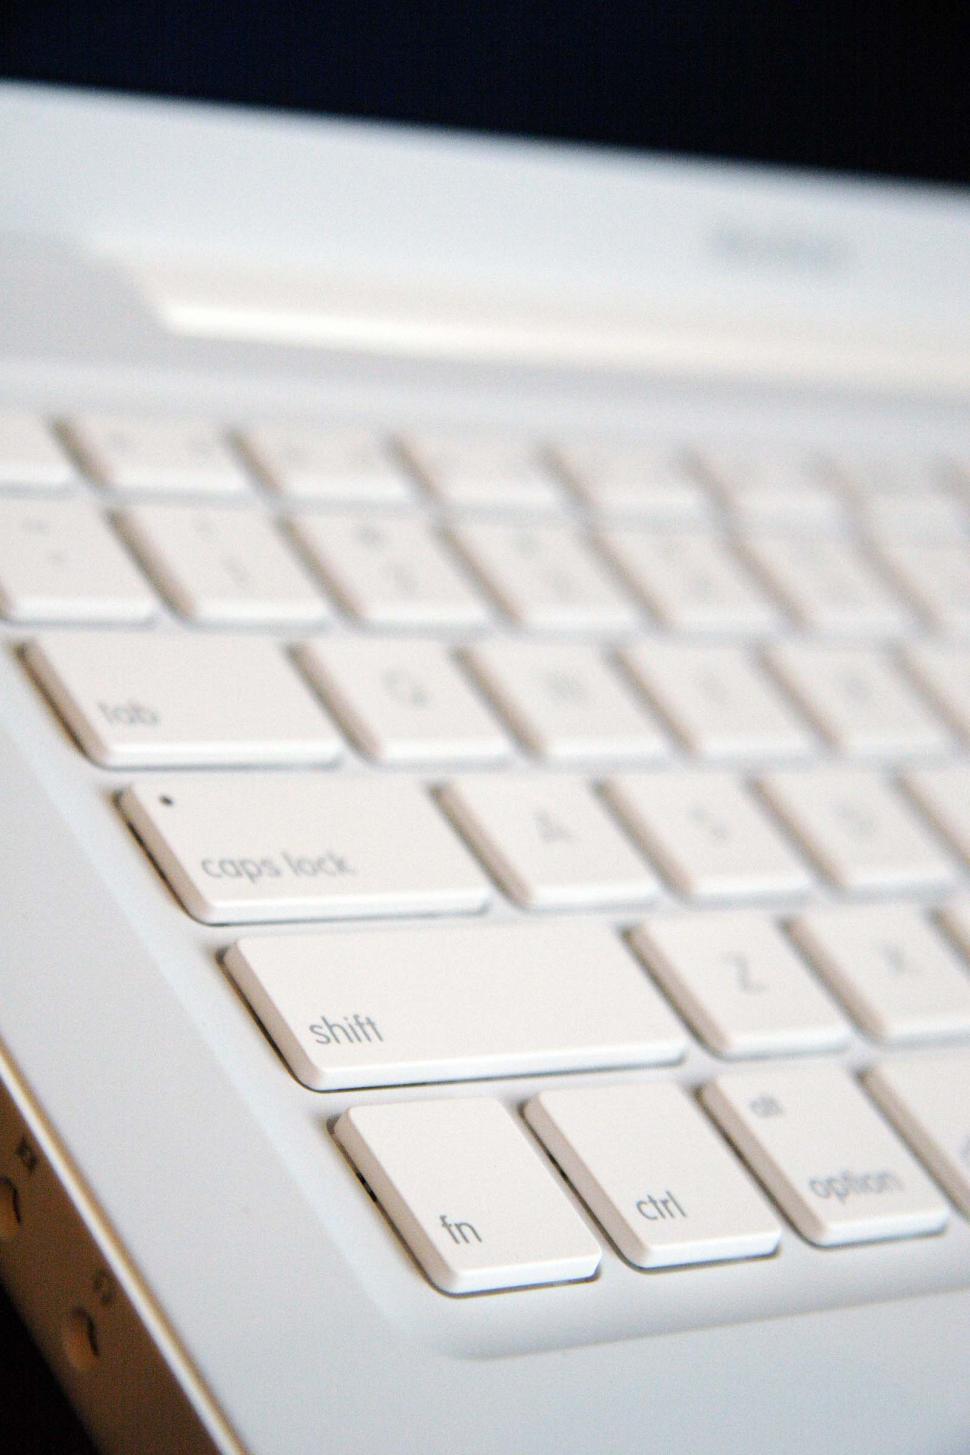 Free Image of Close Up of Laptop Keyboard 